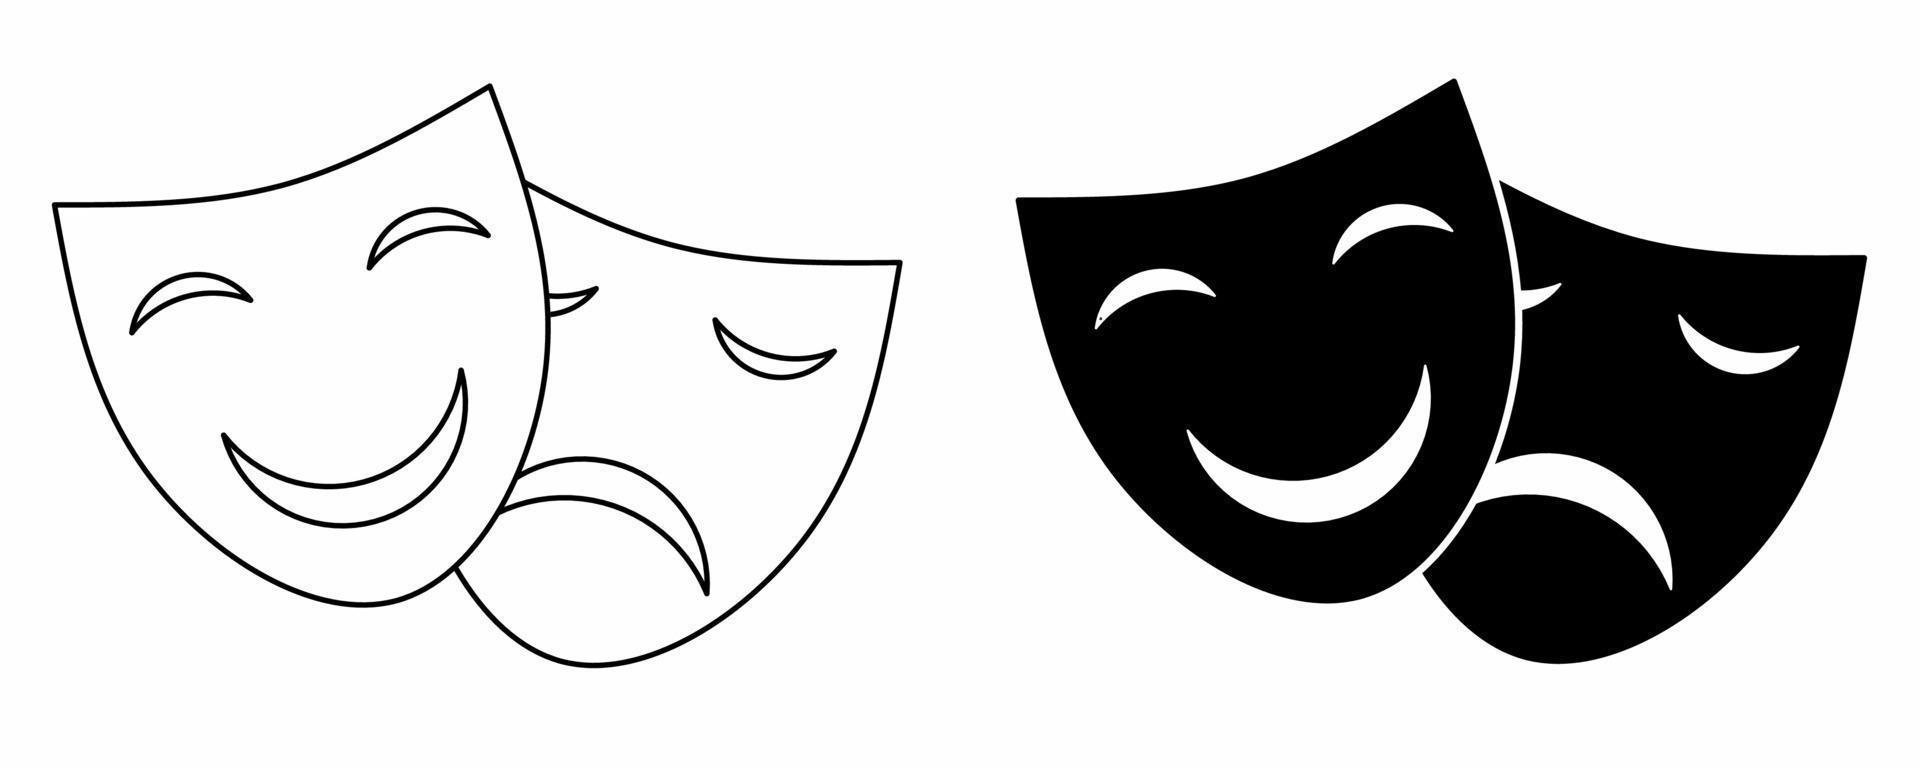 contours silhouette théâtre masques icon set isolé sur fond blanc vecteur